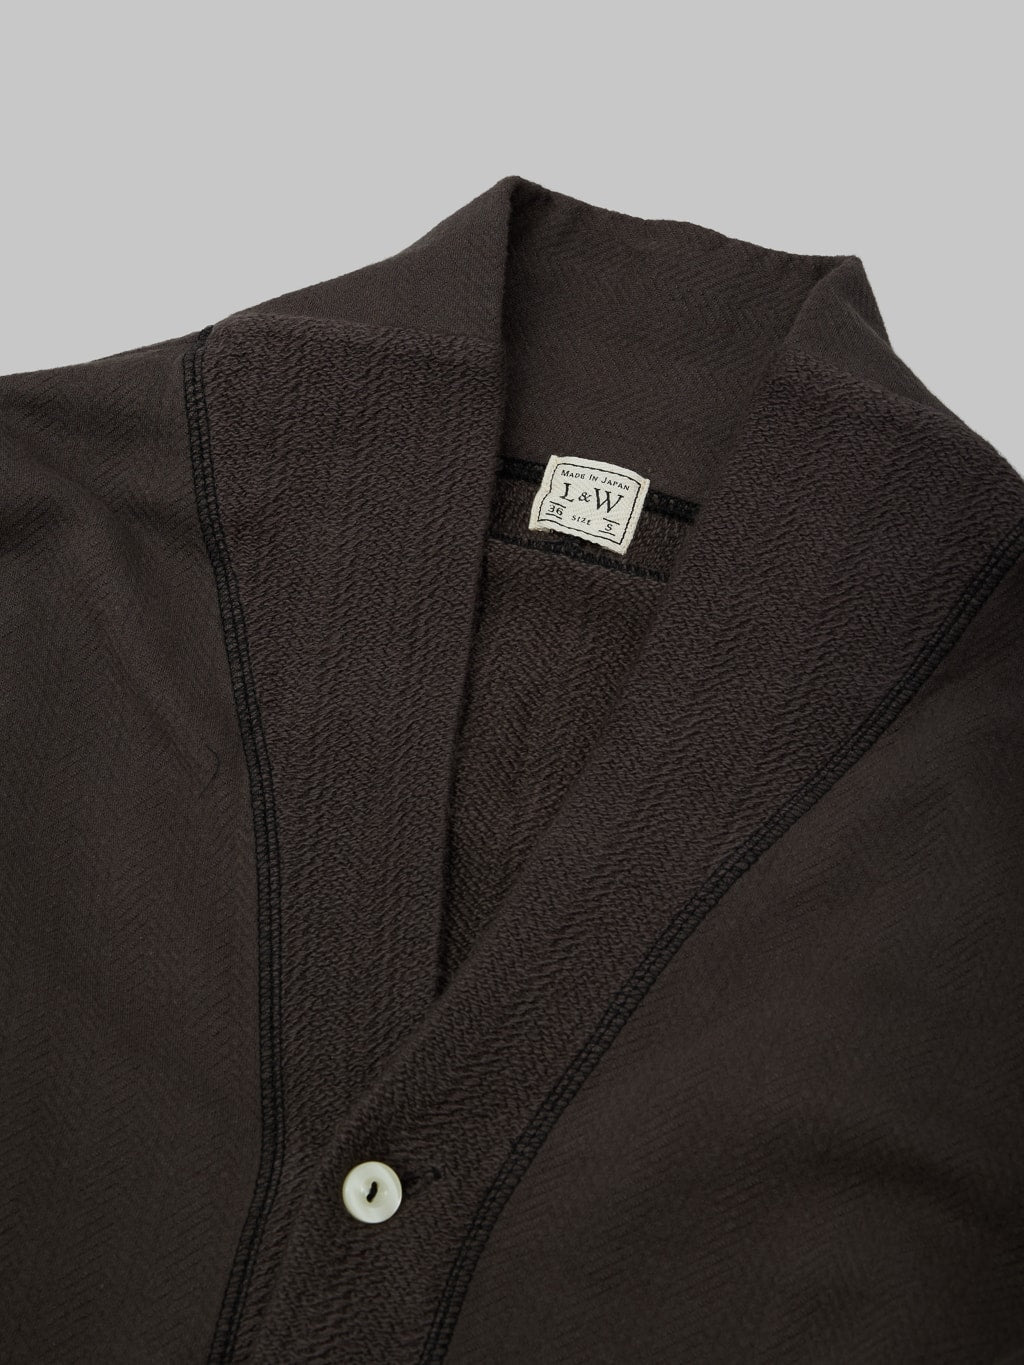 Loop Weft Herringbone Pile Shawl Collar Cardigan Antique Black collar closeup